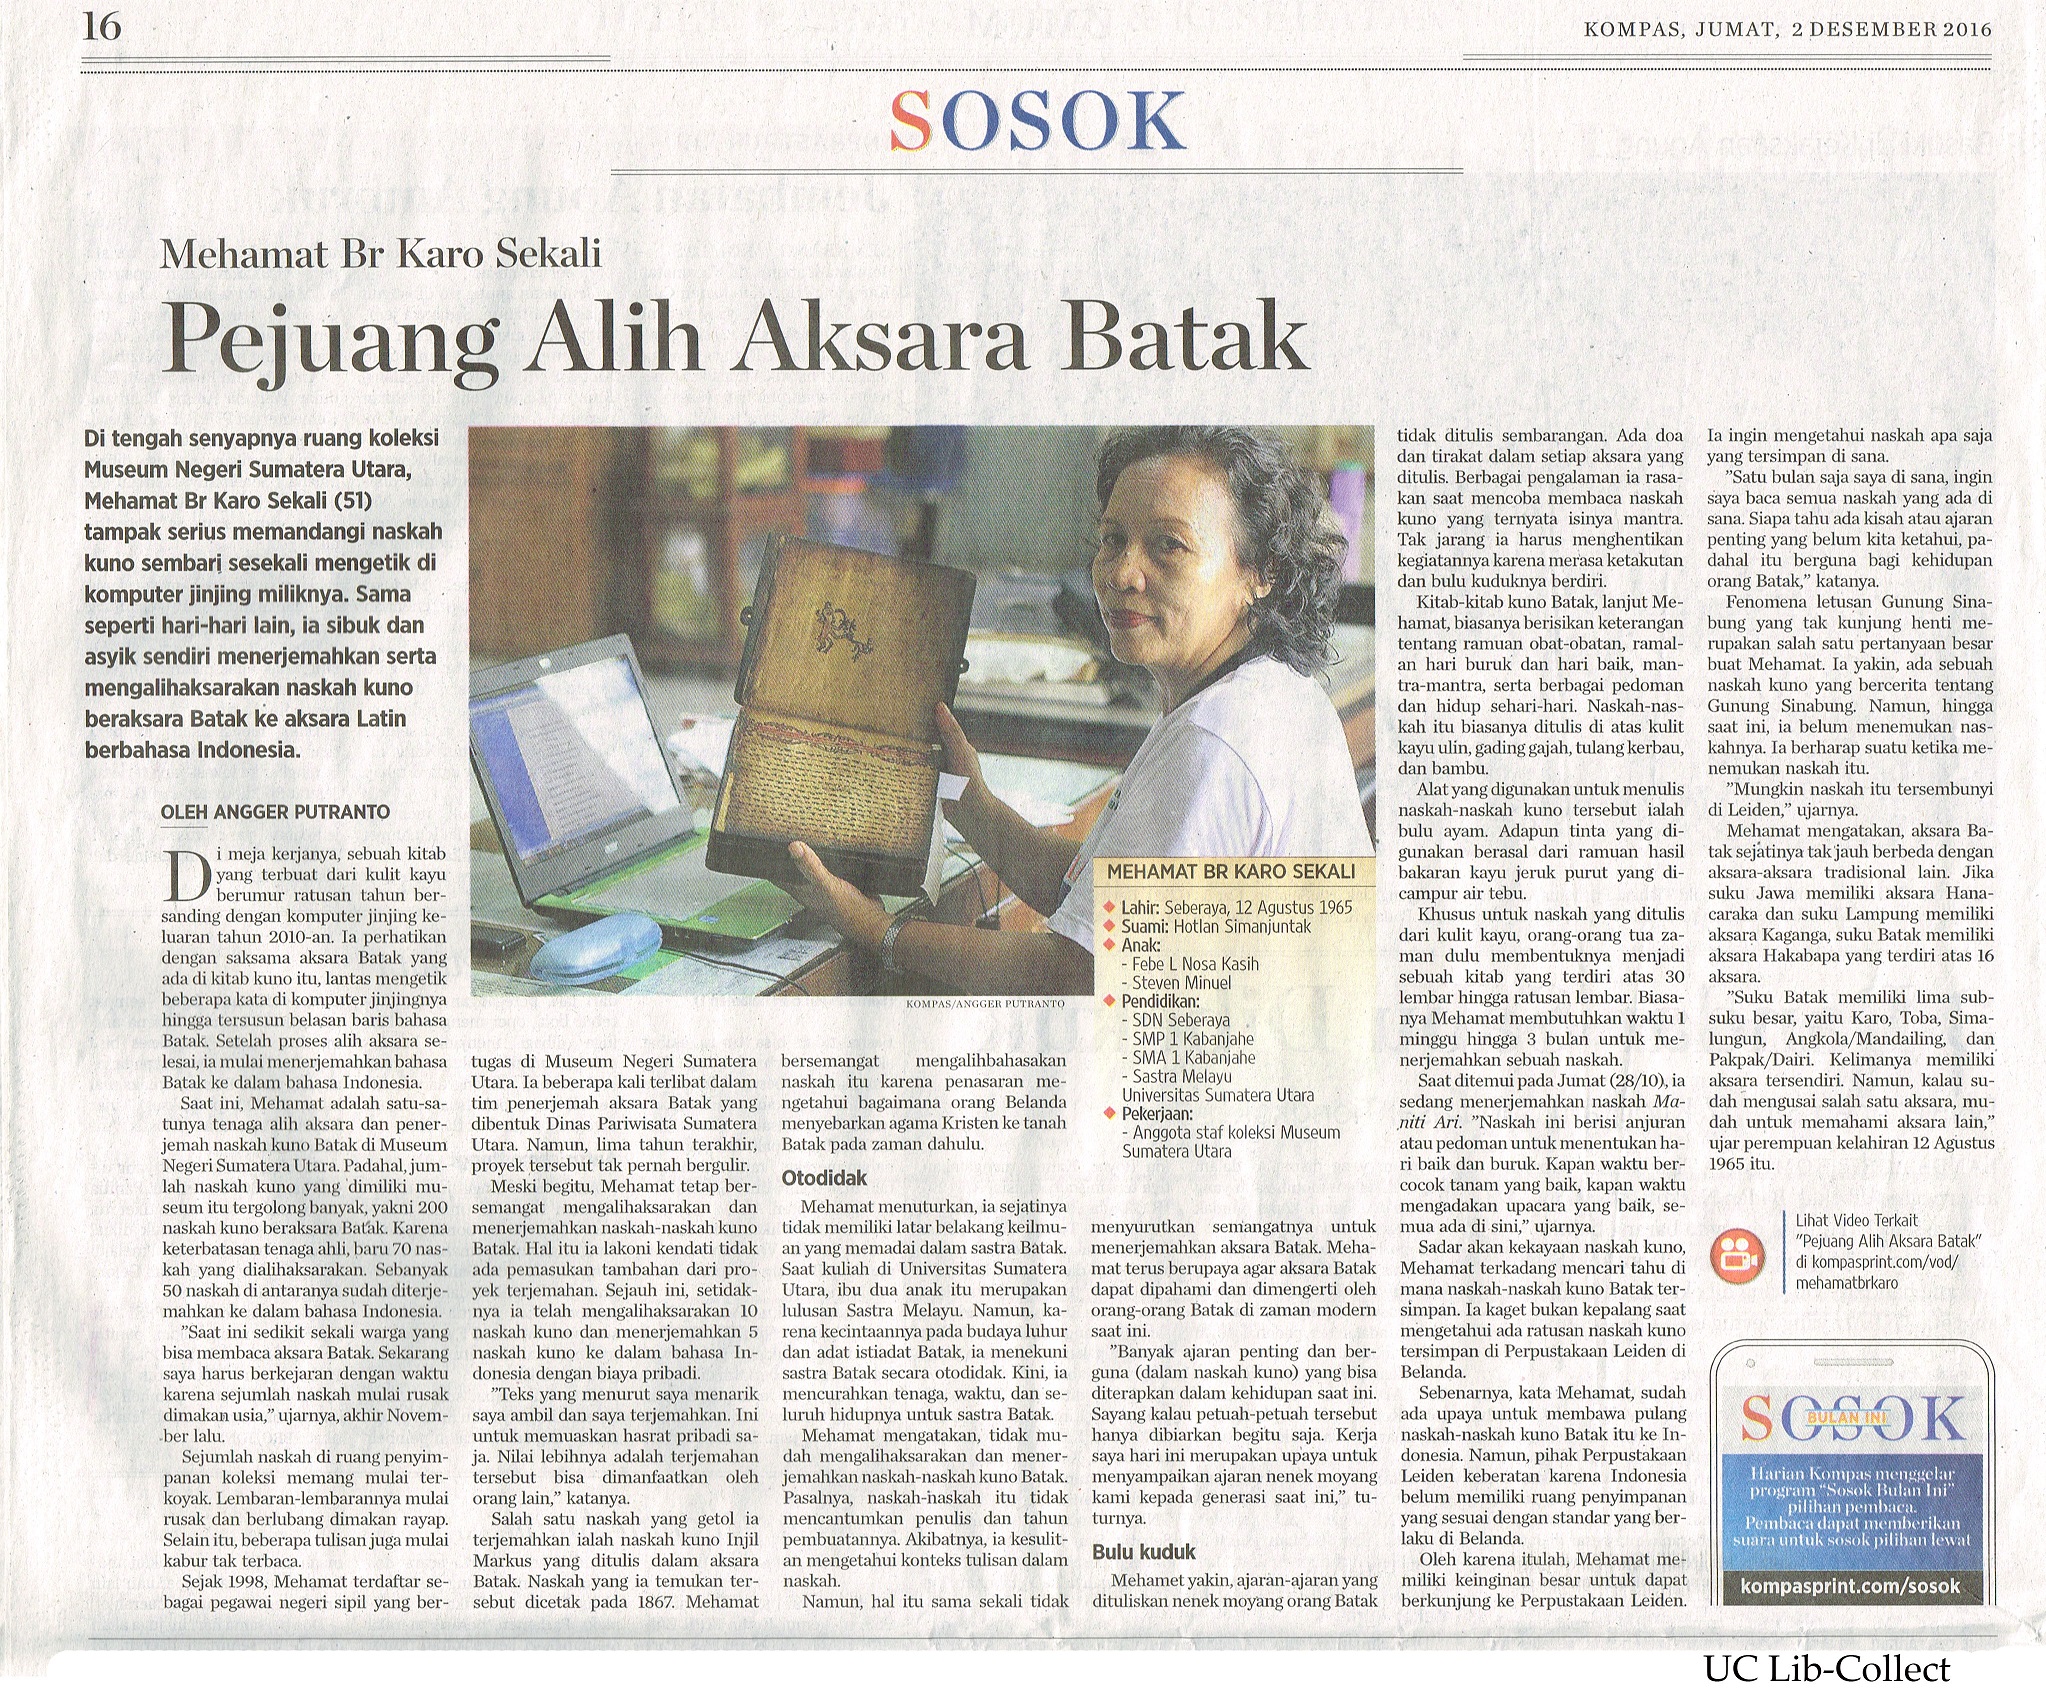 Pejuang Alih Aksara Batak. Kompas. 2 Desember 2016.Hal.16